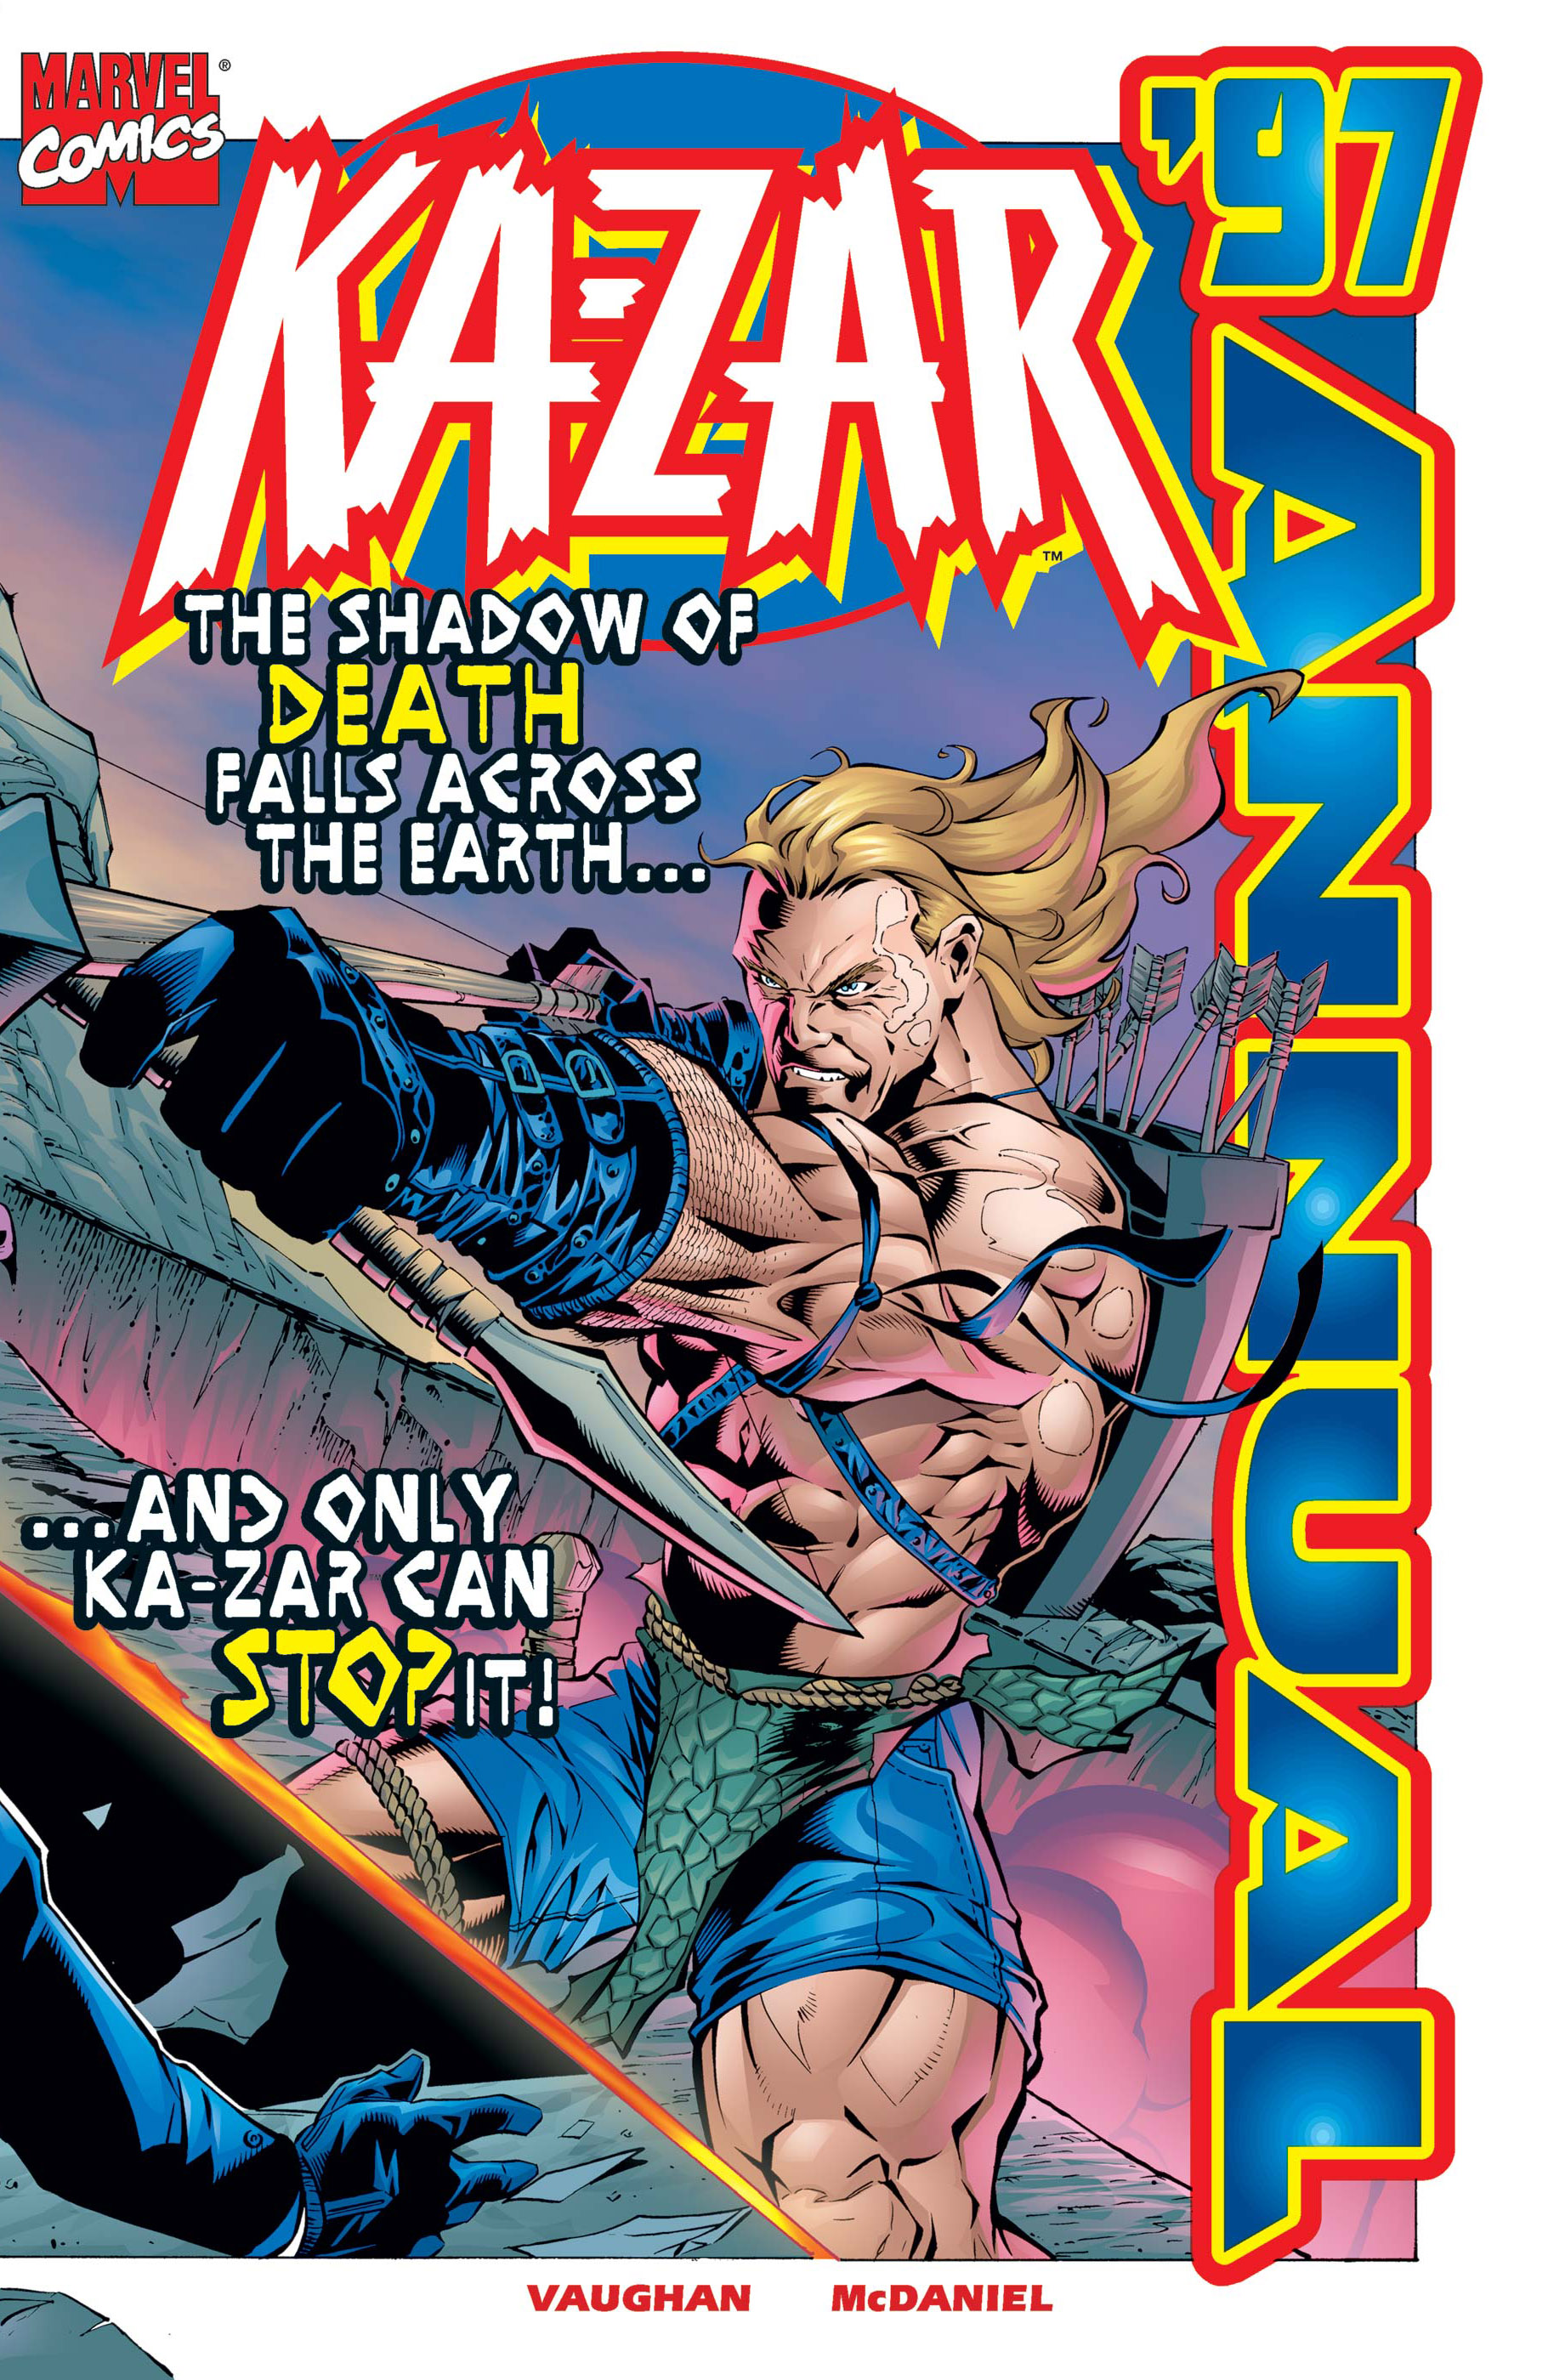 Ka-Zar Annual (1997) #1